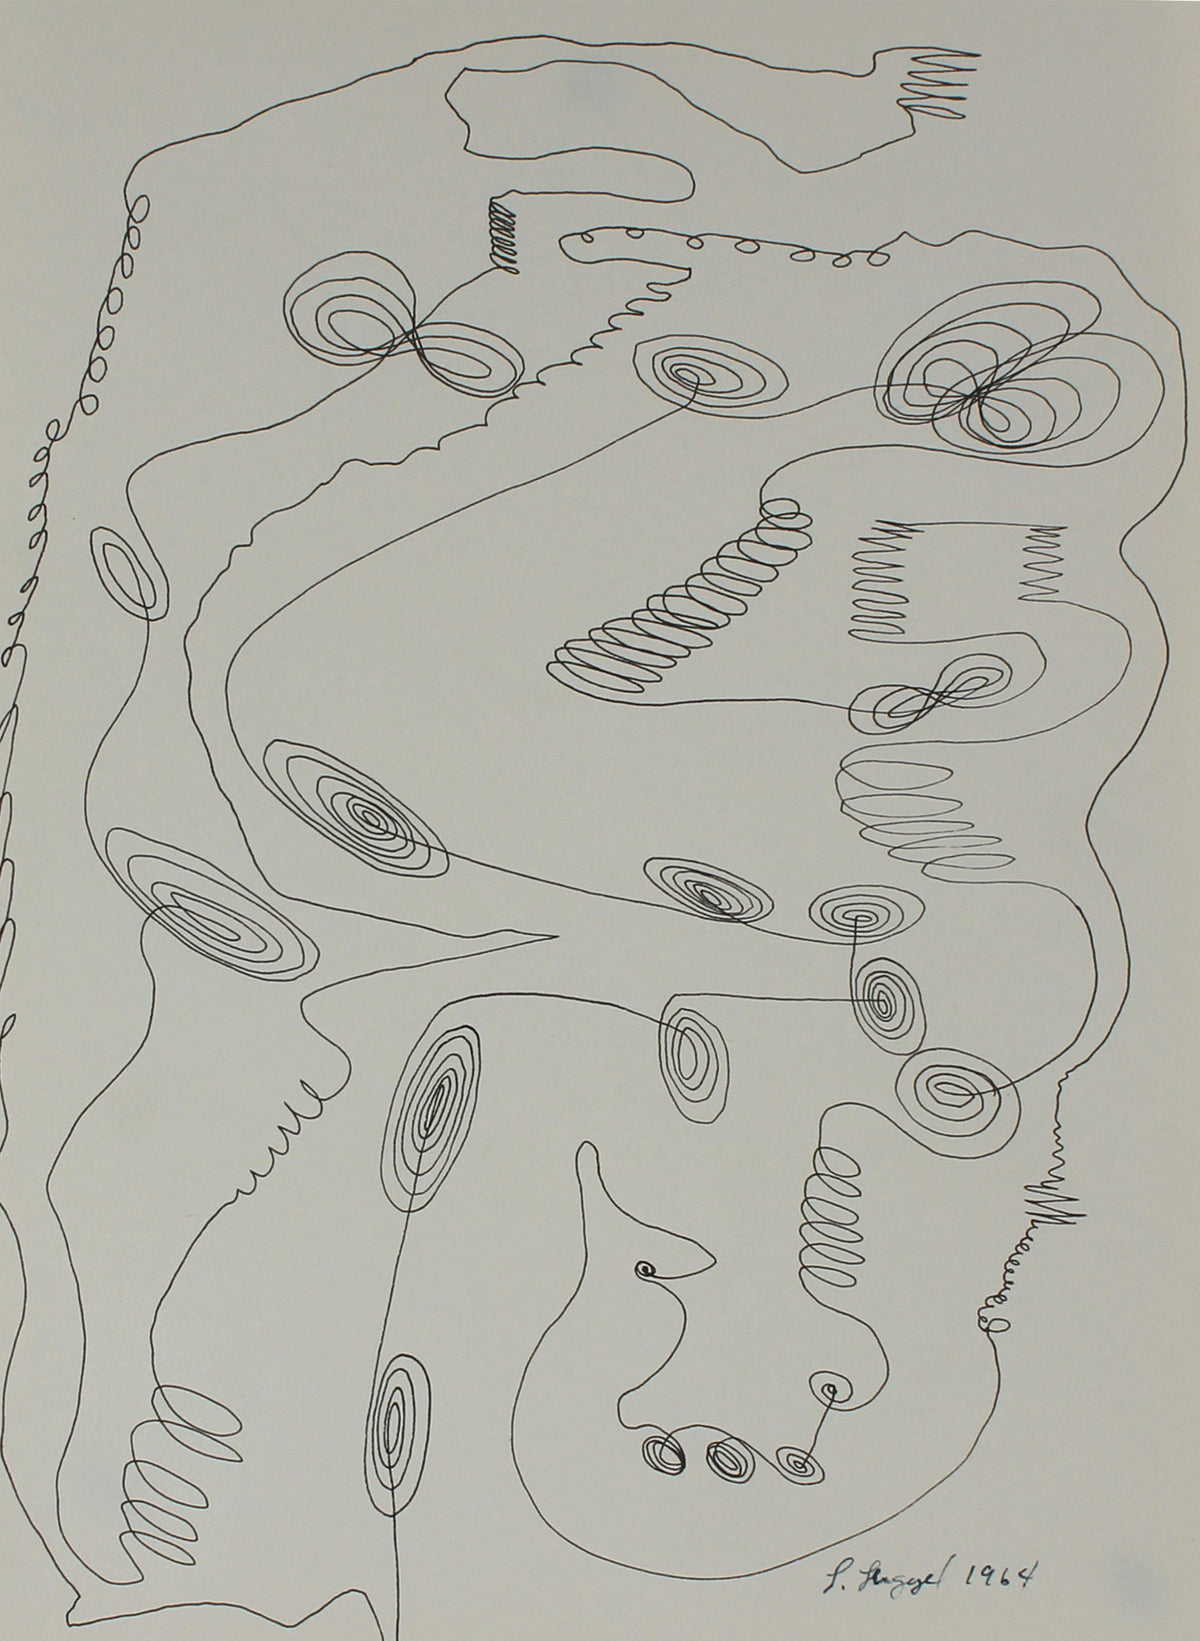 Modernist Abstracted Spiral Drawing&lt;br&gt;1964 Ink on Paper&lt;br&gt;&lt;br&gt;#56762